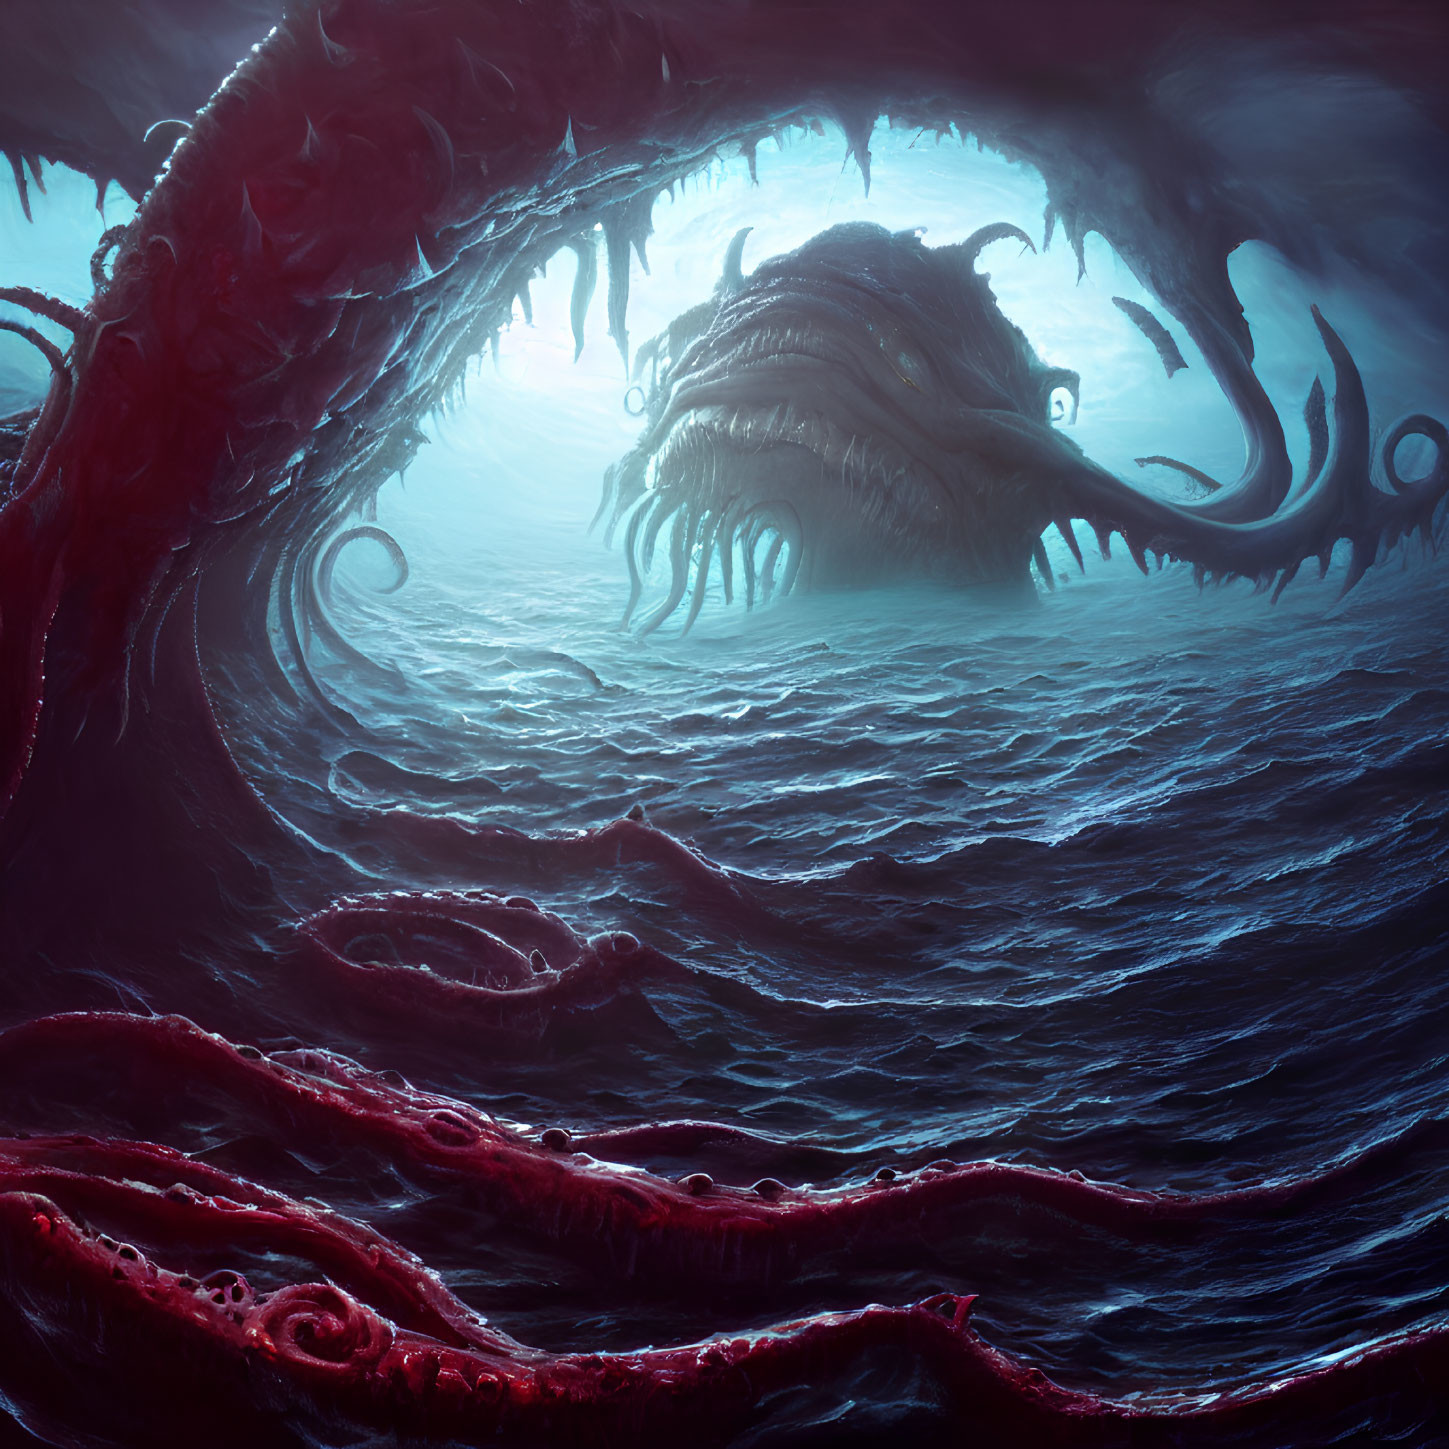 Menacing sea monster with tentacles emerges from dark blue ocean